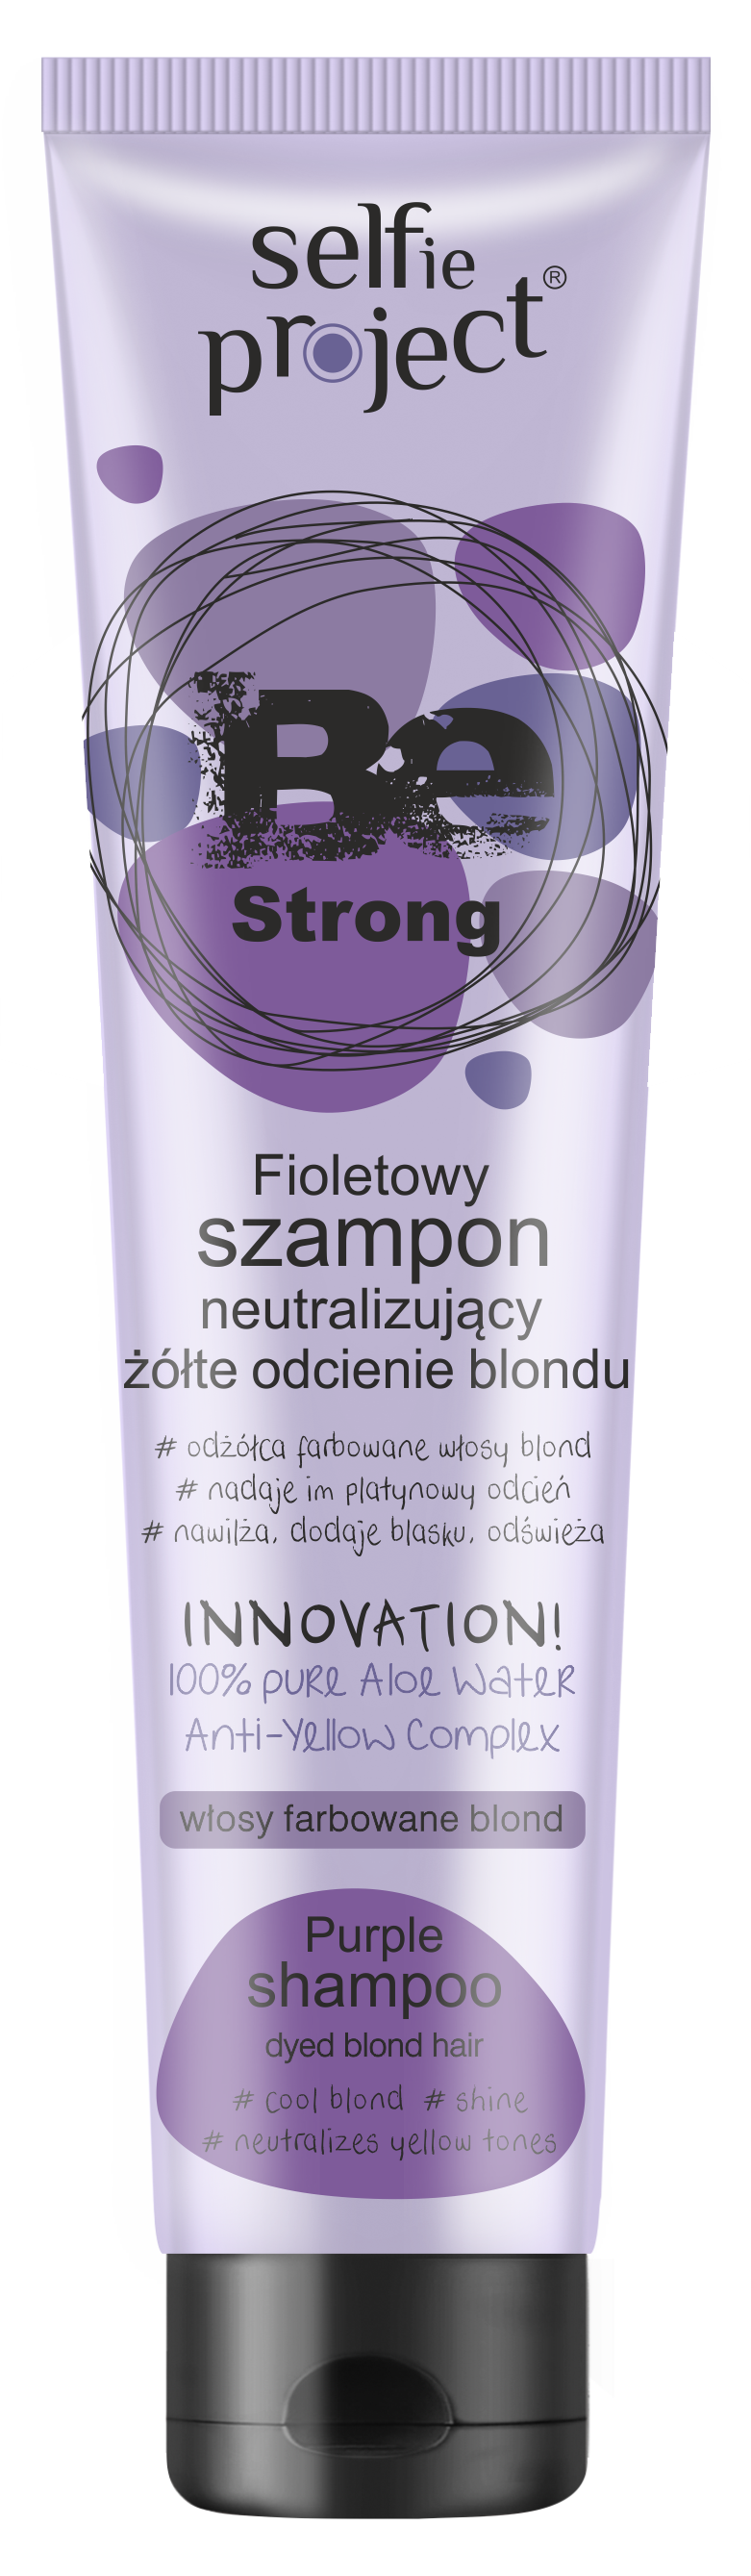 fioletowy szampon na zielona poswiate